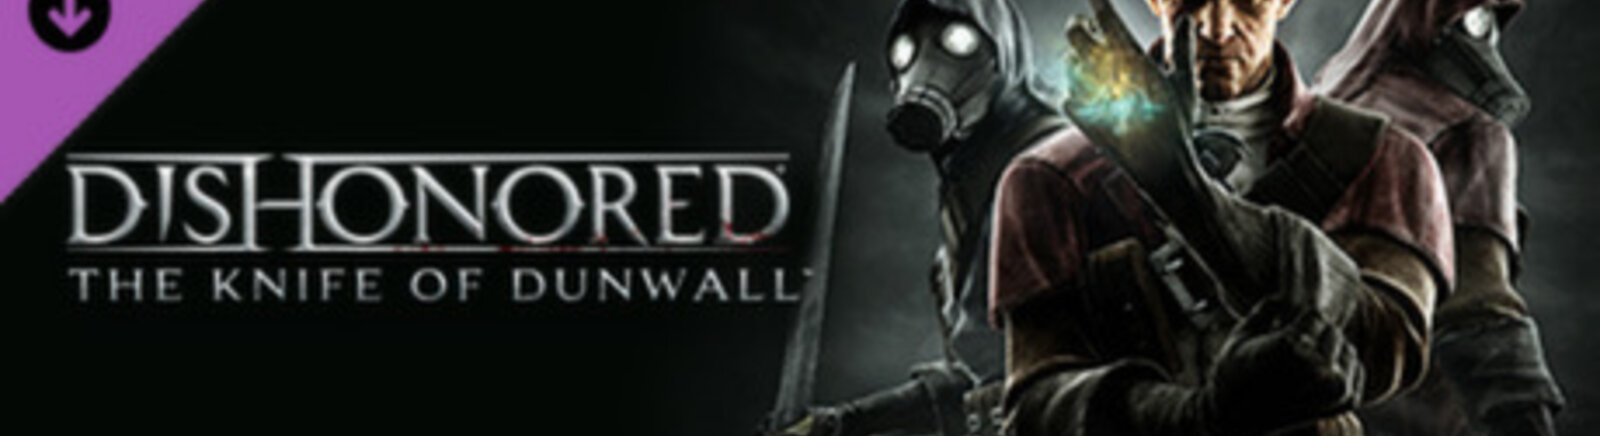 Дата выхода Dishonored: The Knife of Dunwall  на PC, PS3 и Xbox 360 в России и во всем мире